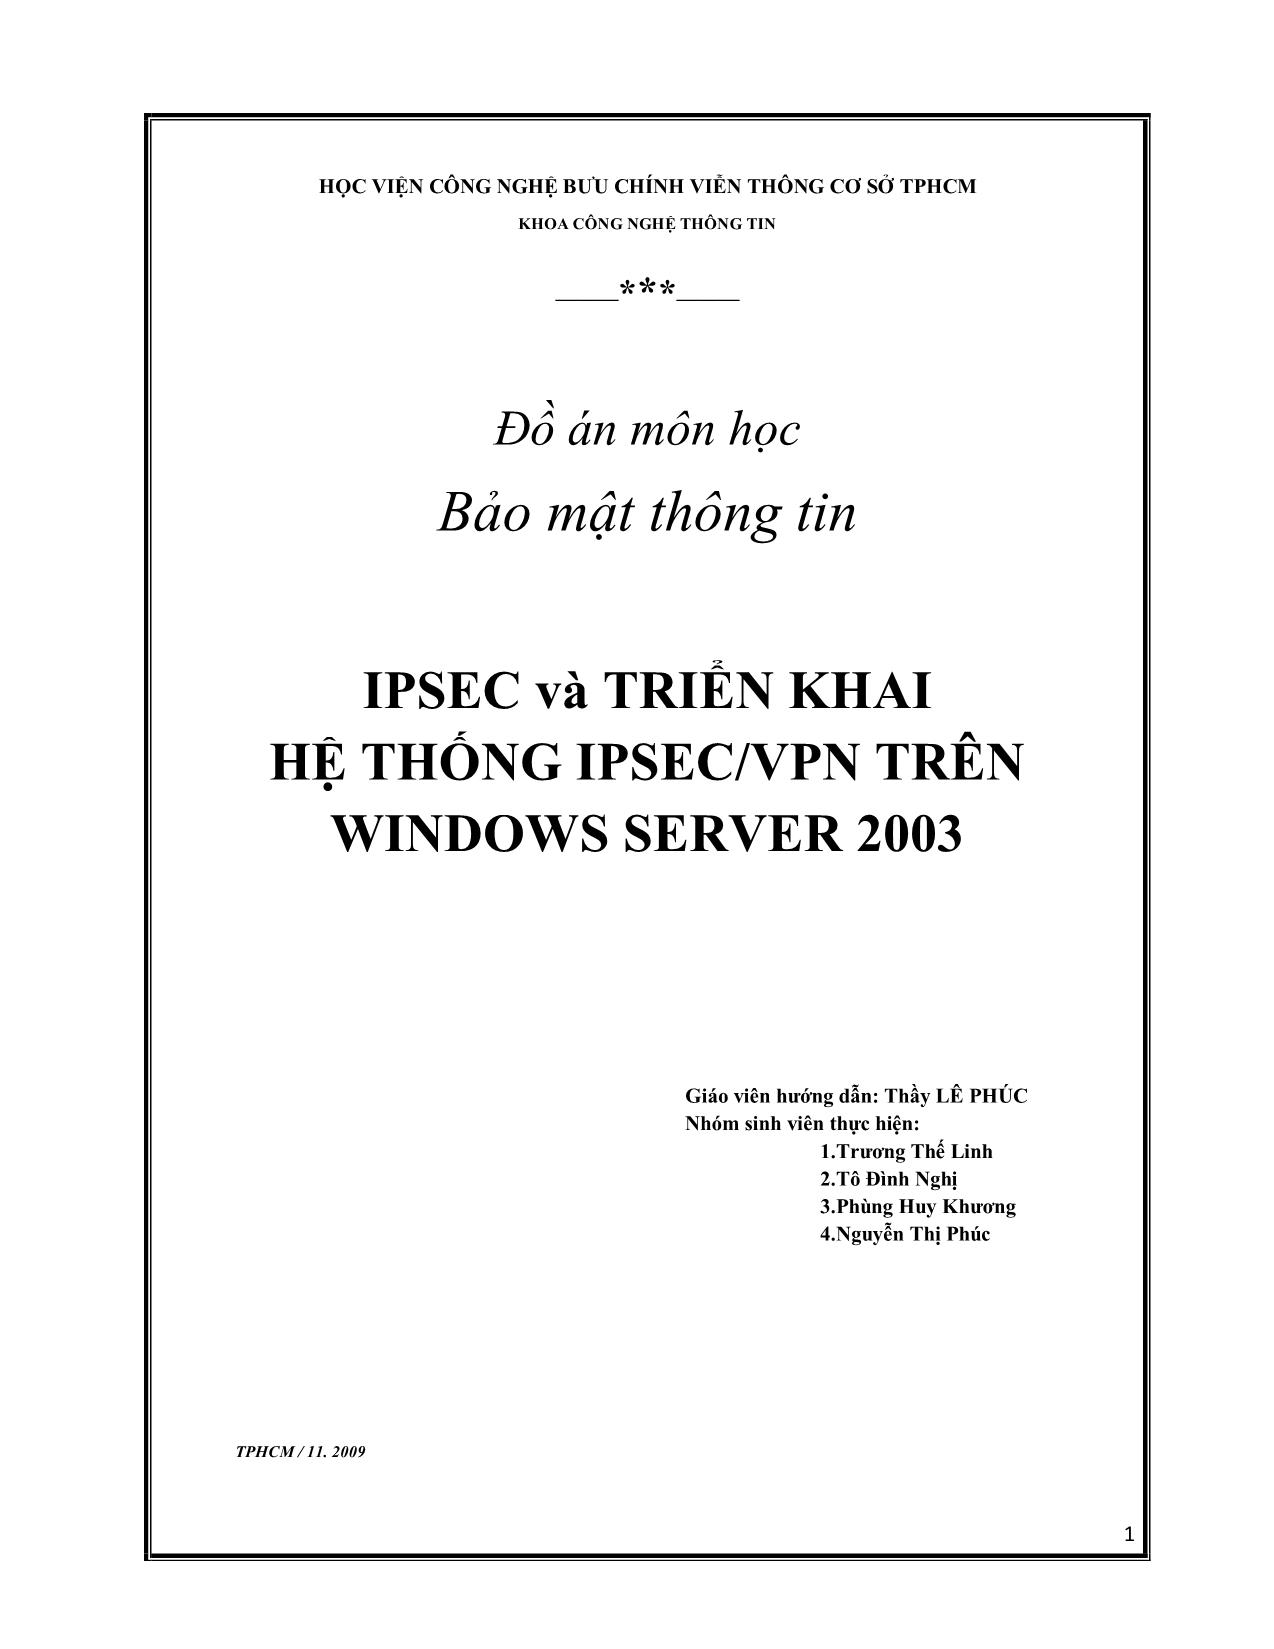 Đồ án IPSEC và triển khai hệ thống IPSEC/VPN trên Windows Server 2003 trang 1